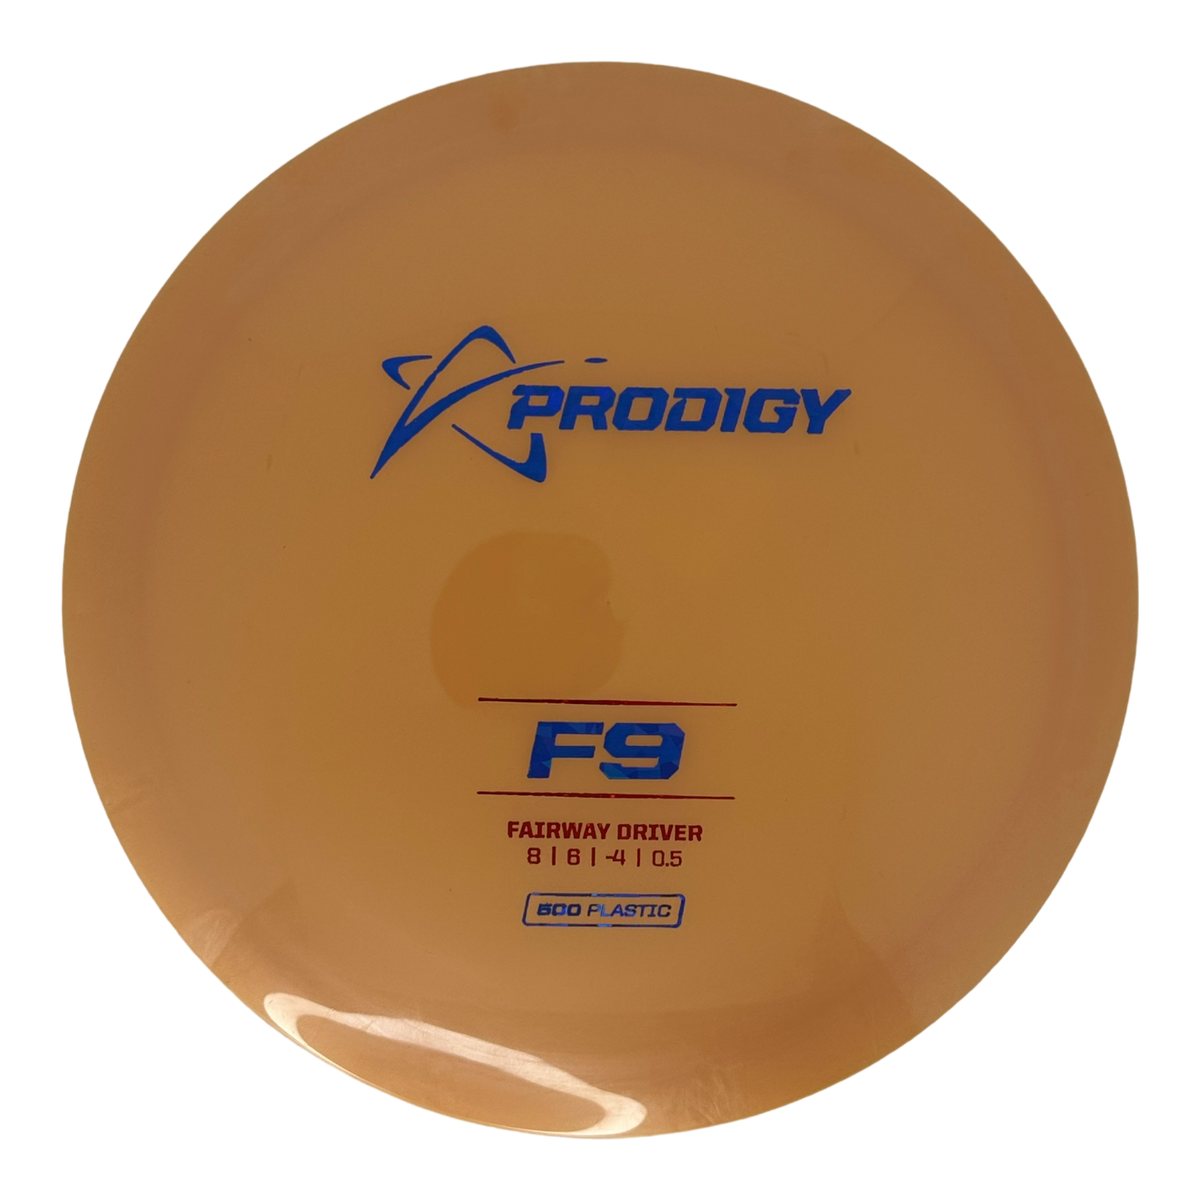 Prodigy 500 F9